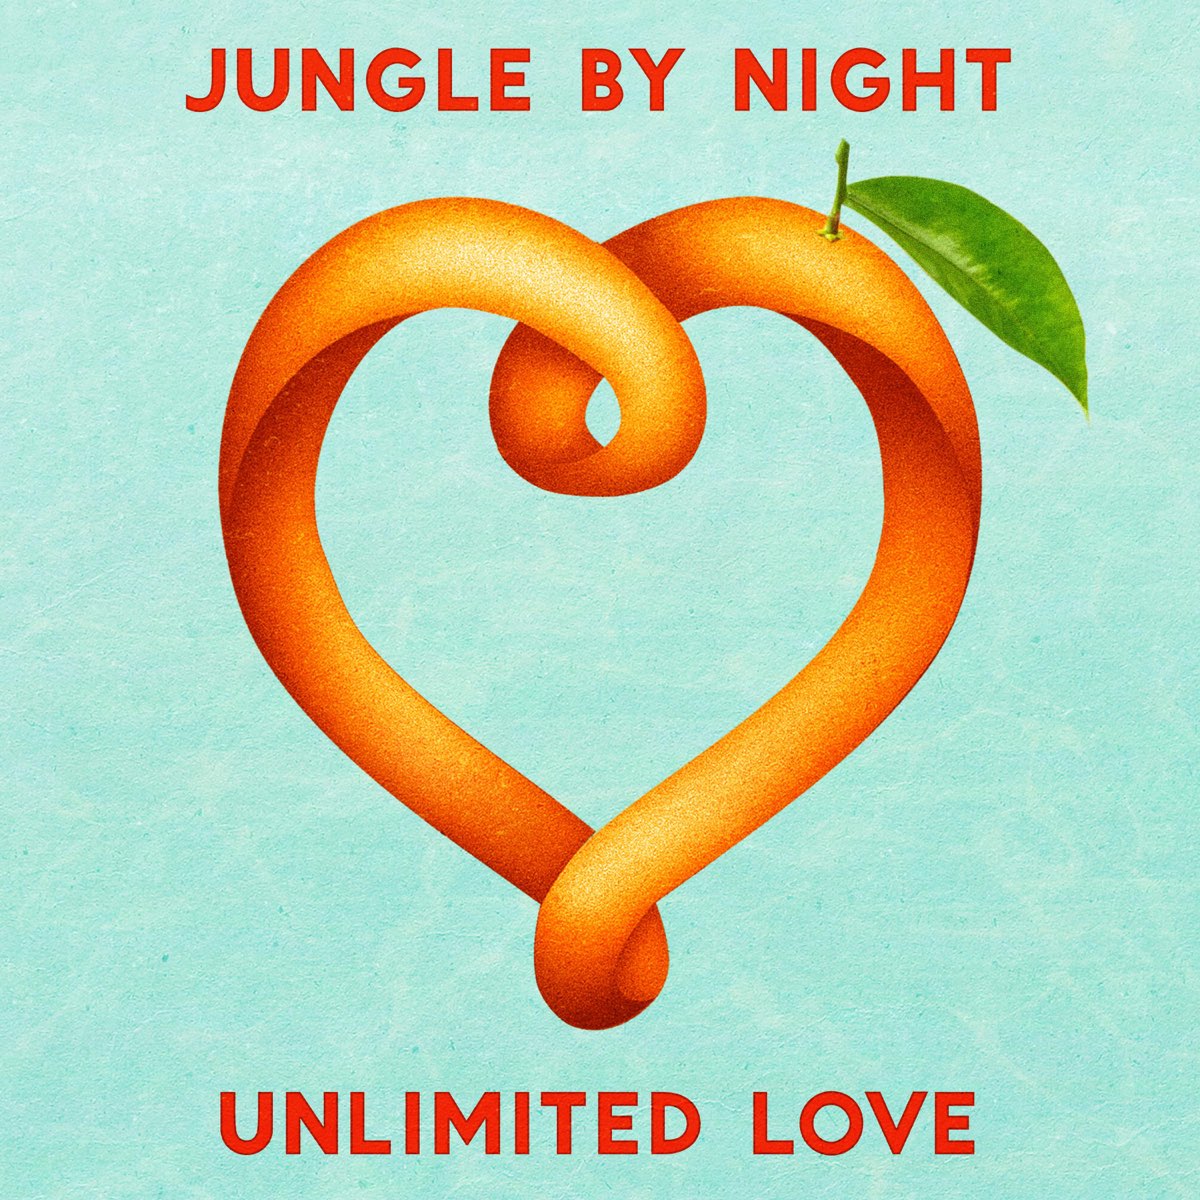 Jungle love. Unlimited Love. Love Unlimited "Love is back". Unlimited Love обложка. Love is a Jungle песня.